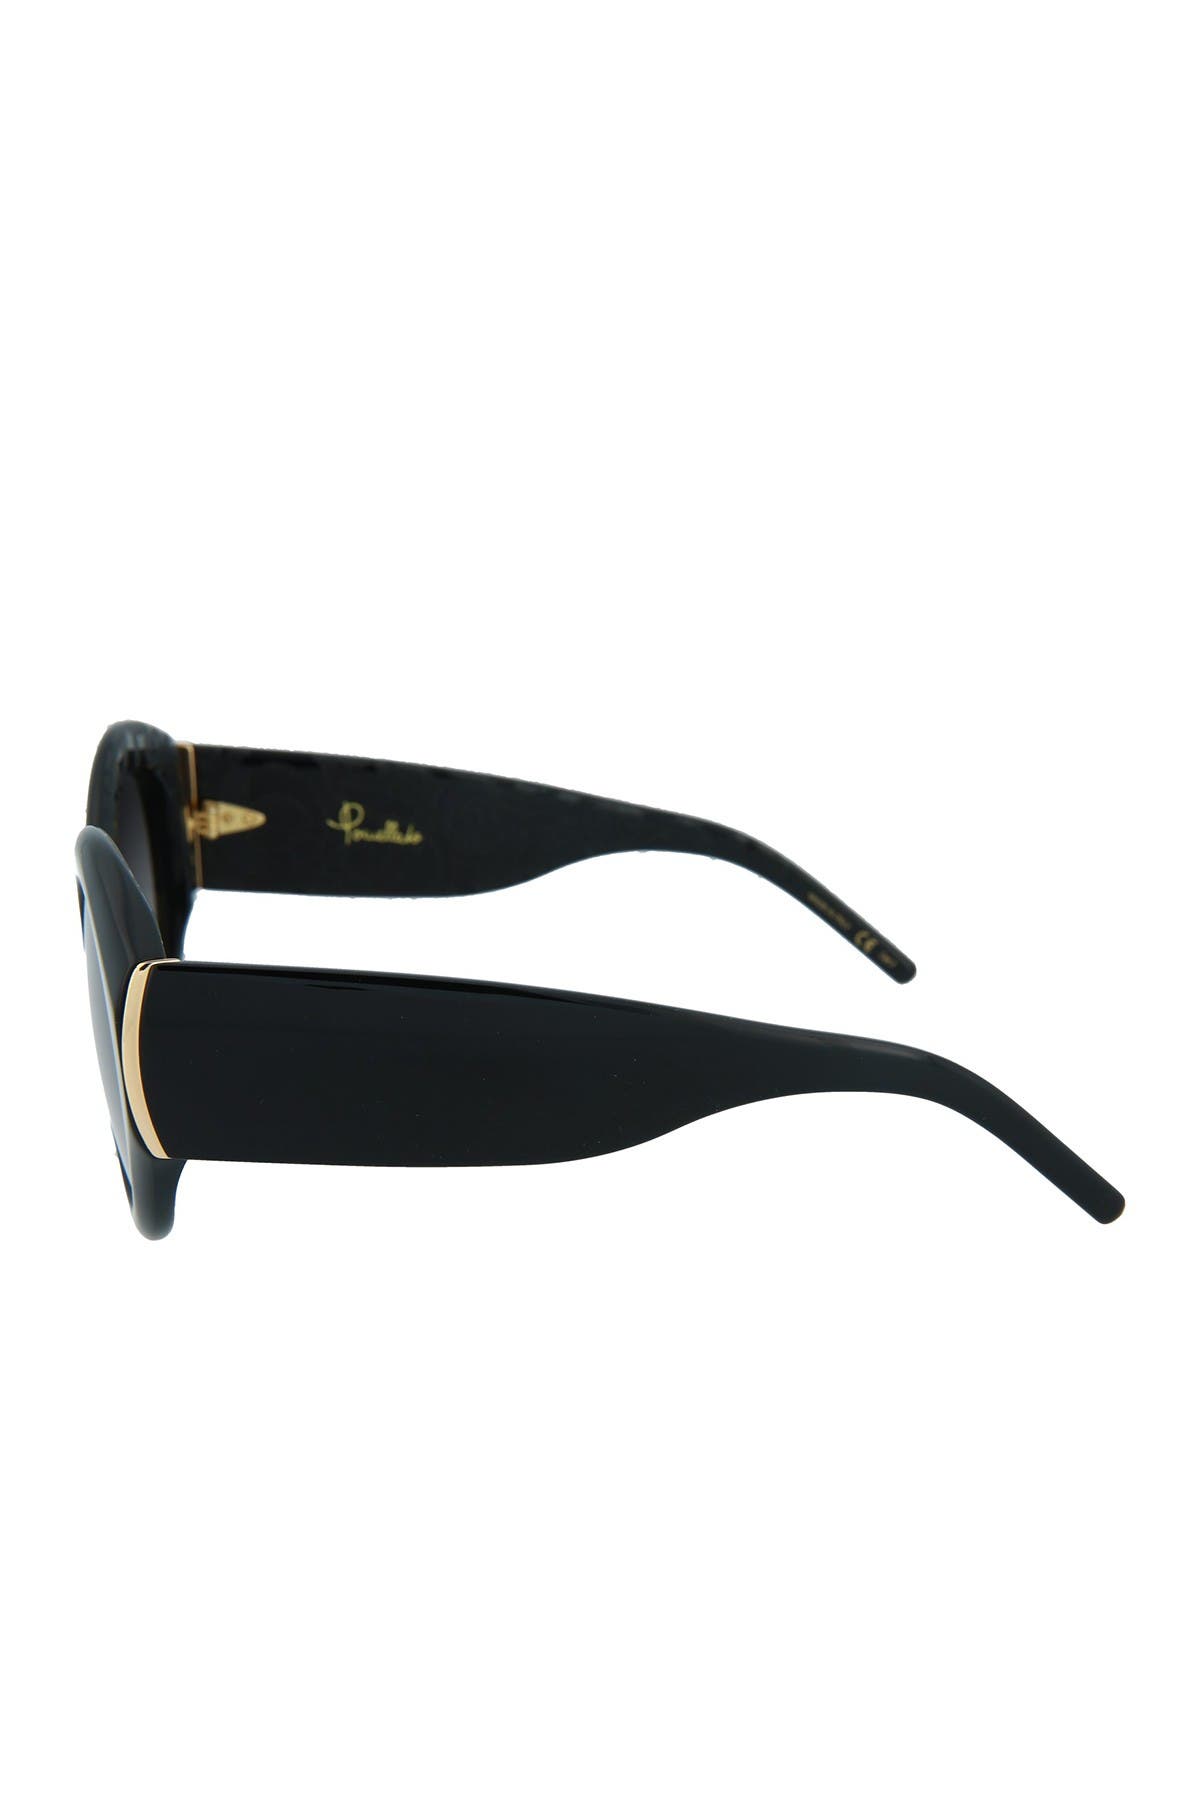 Pomellato Core Sunglasses In Black